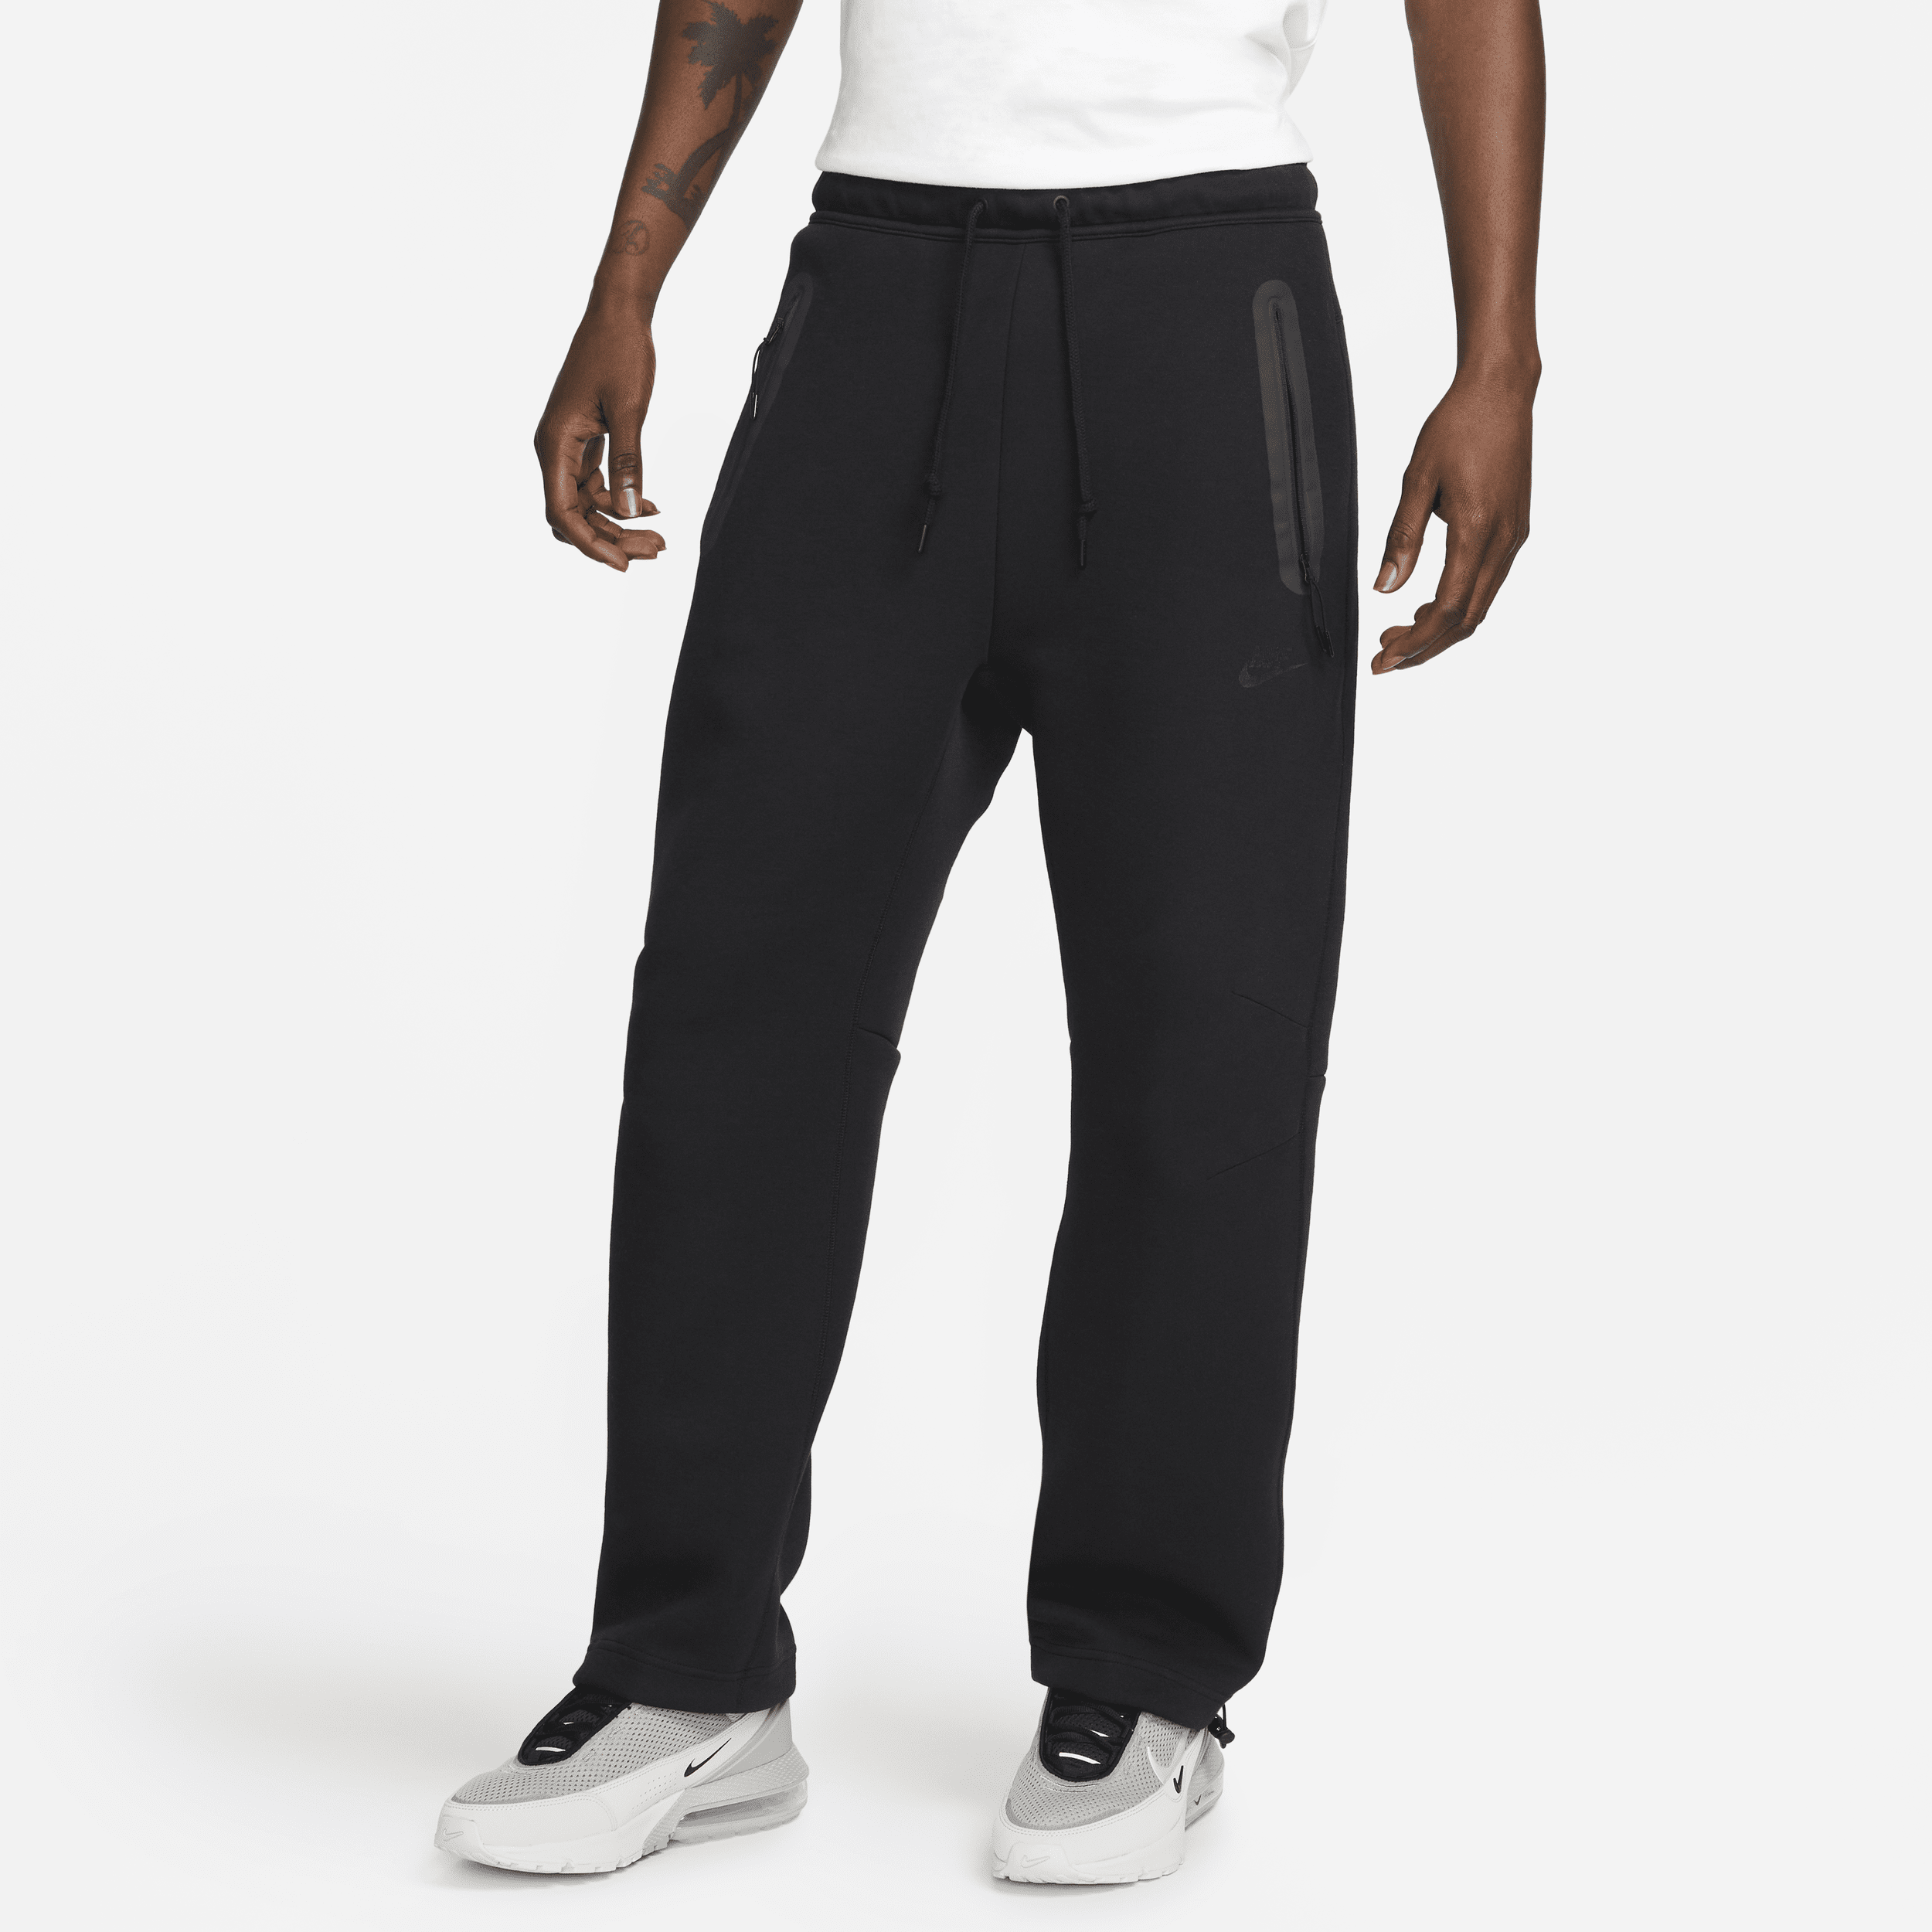 Pantaloni tuta con orlo aperto Nike Sportswear Tech Fleece – Uomo - Nero